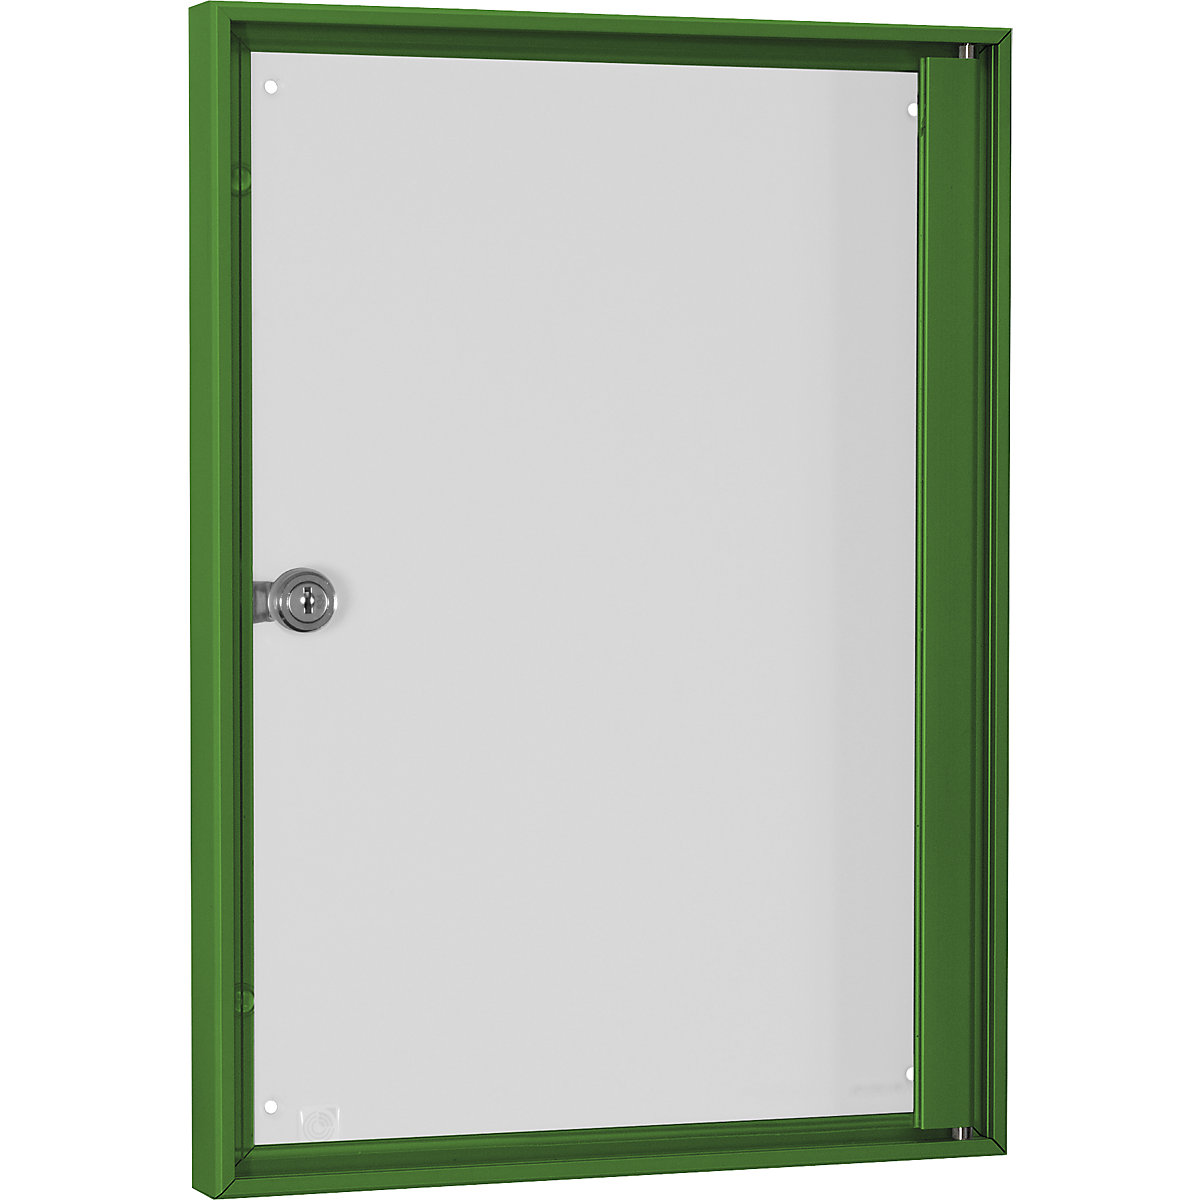 Vitrinekast voor binnen, voor formaat 1 x A4, frame groen-4